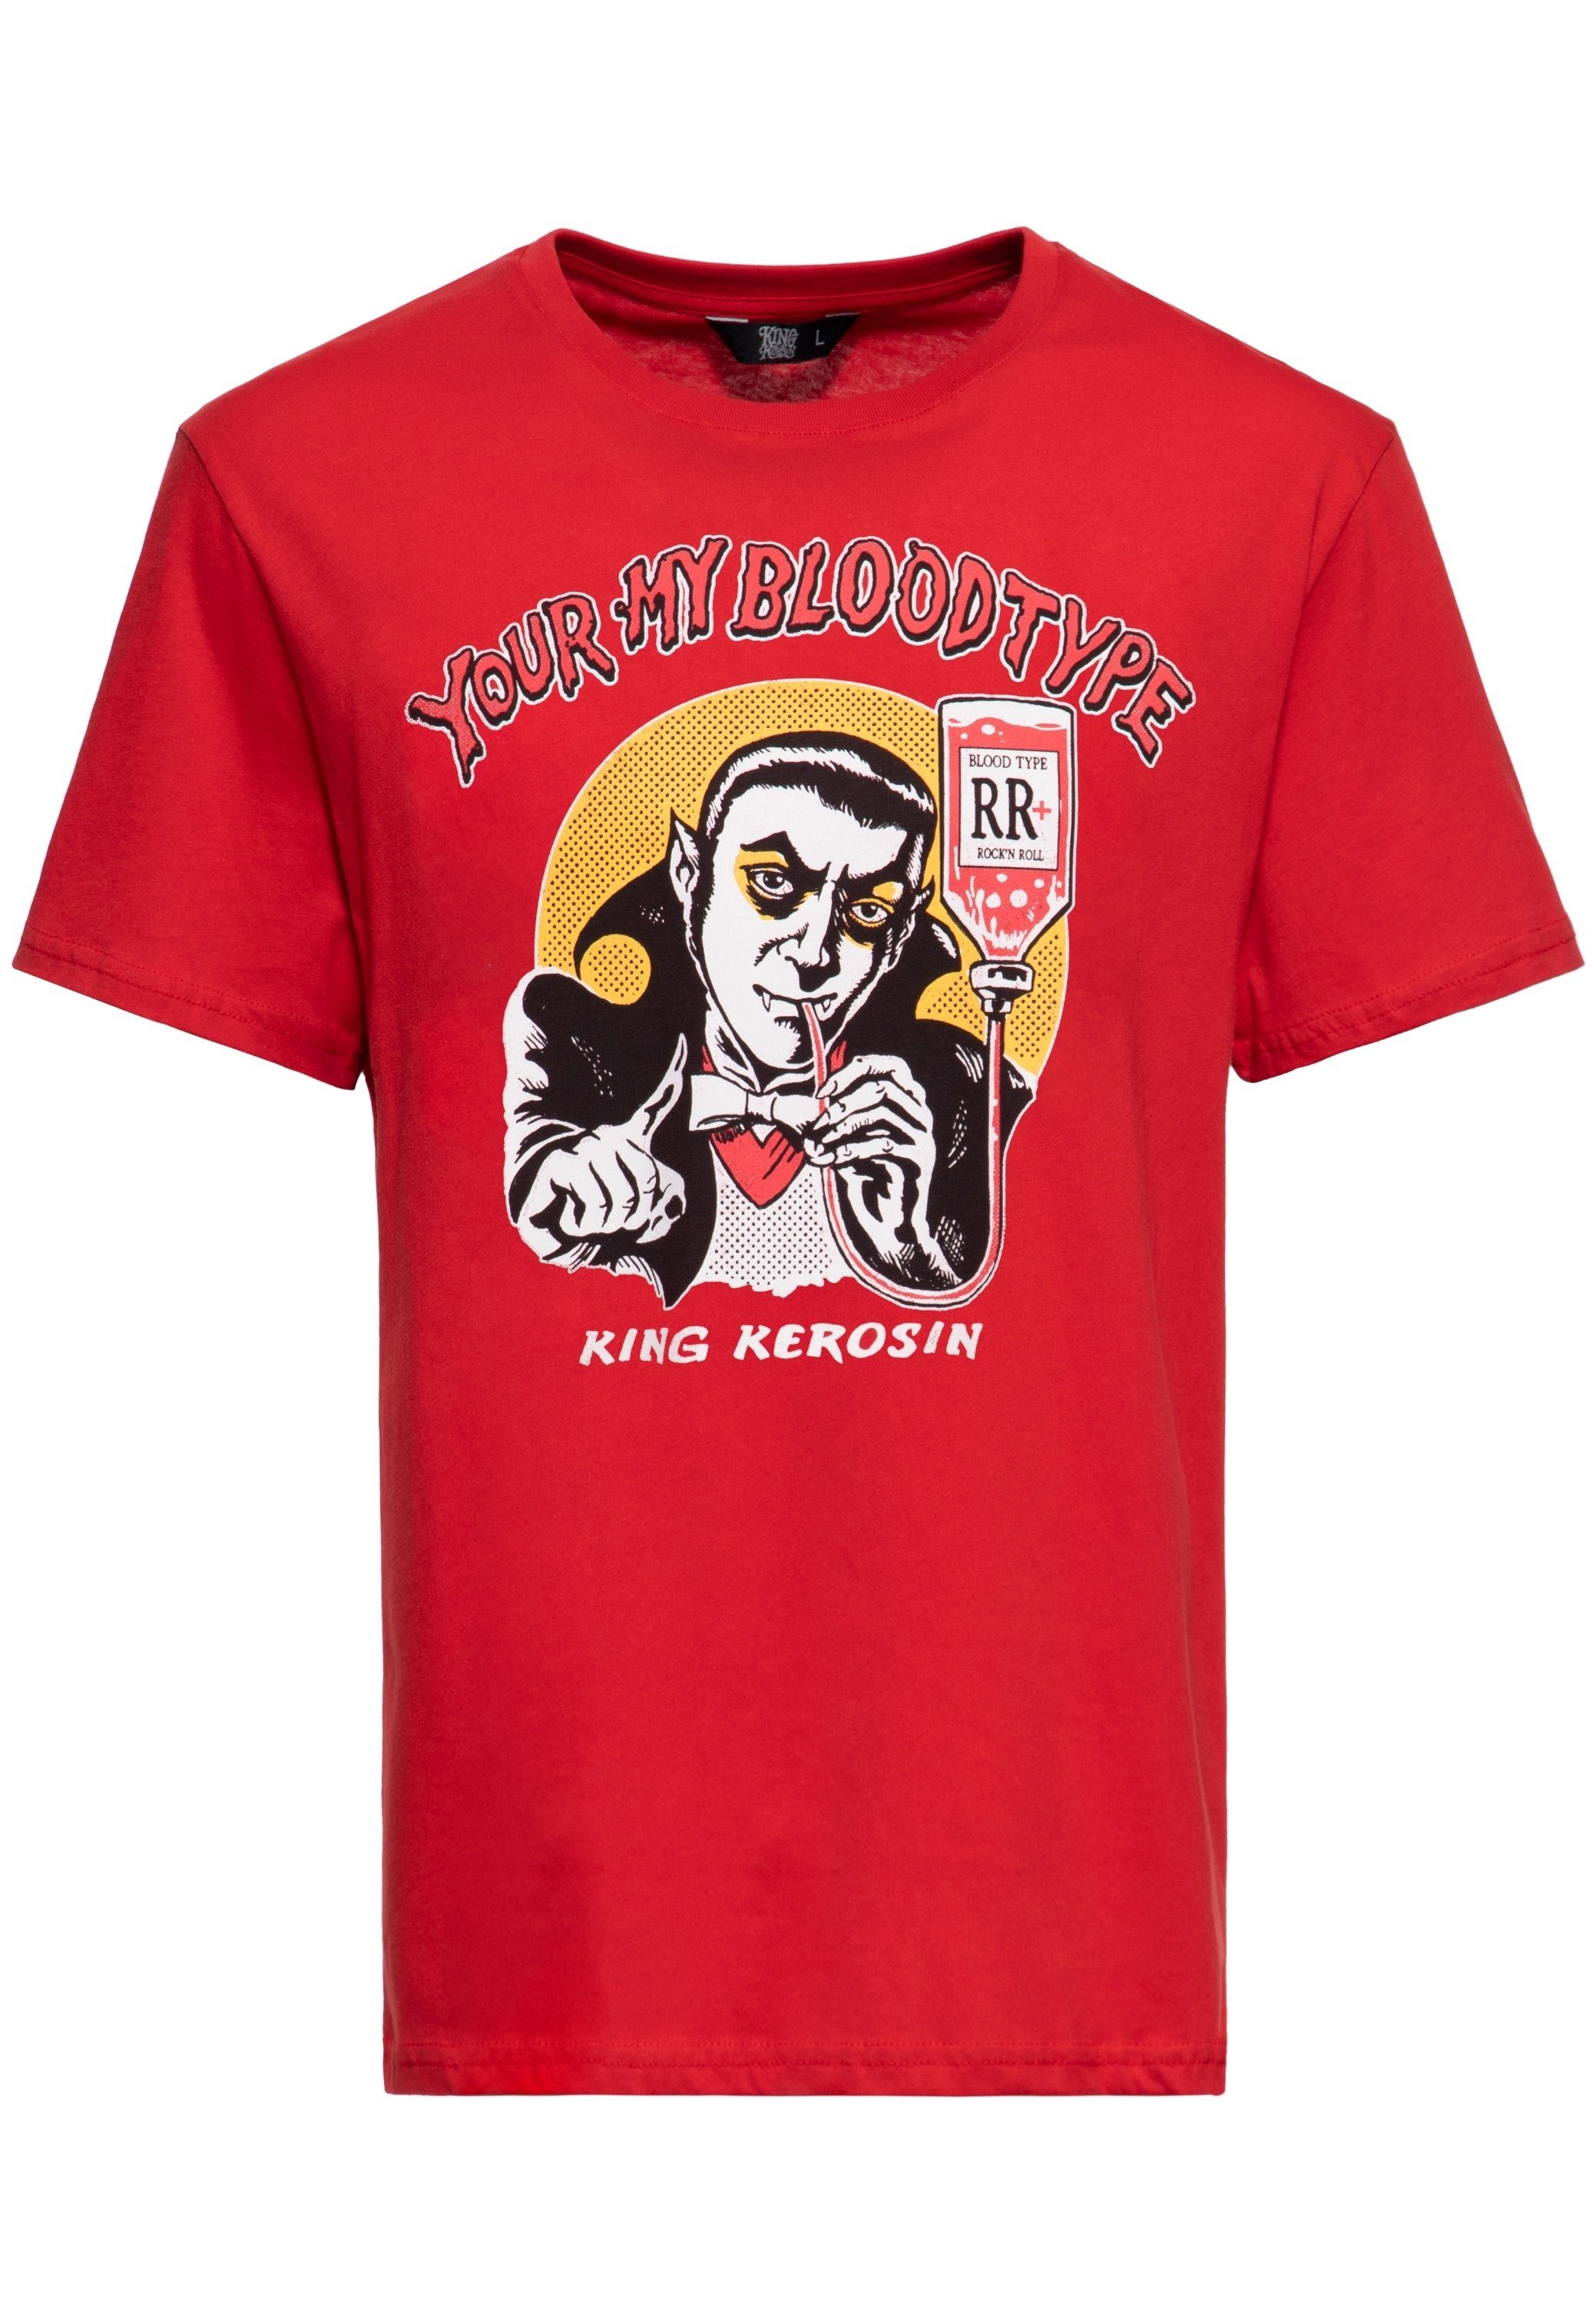 KingKerosin Print-Shirt You're my blood type mit Vampir Artwork im Comic-Stil rot | T-Shirts